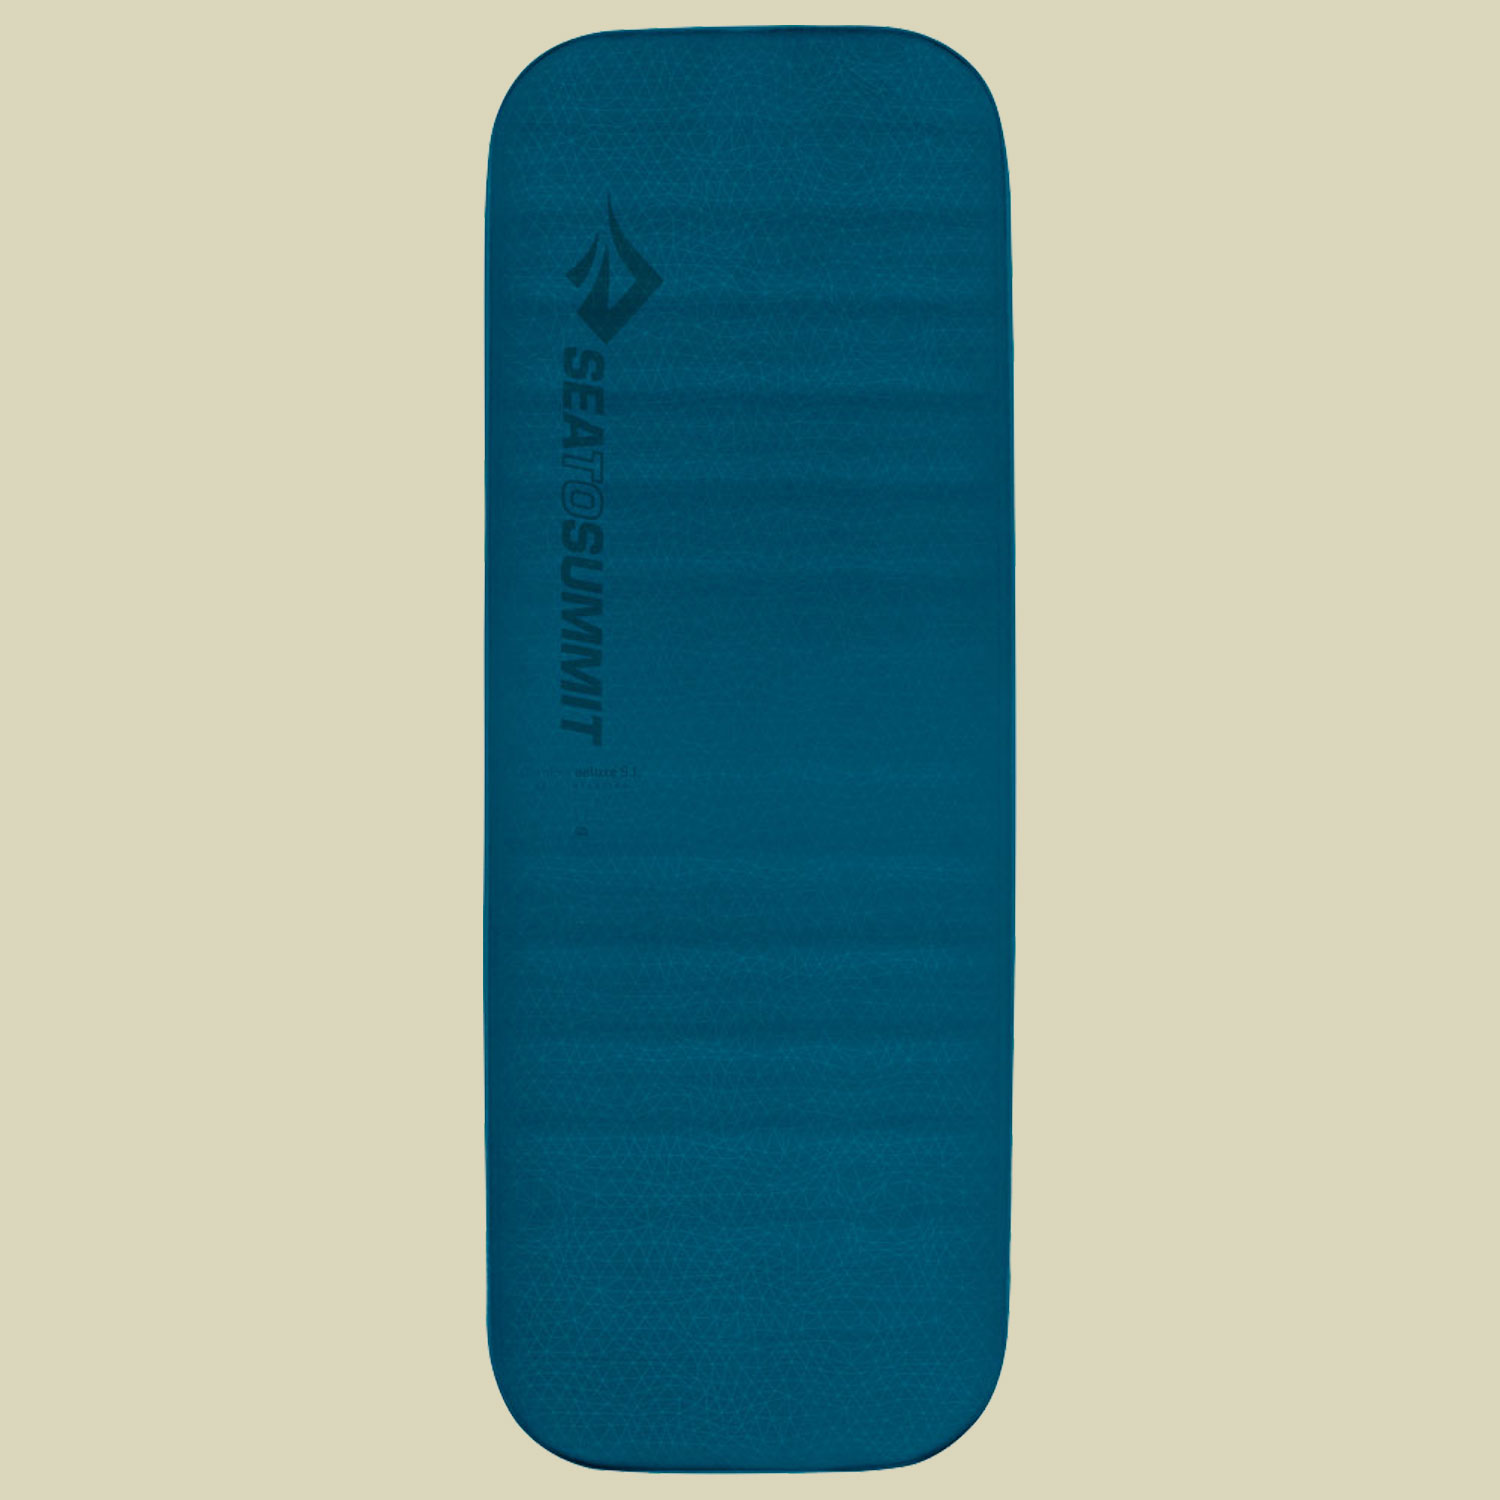 Comfort Deluxe S.I. Mat Liegefläche 183 x 64 cm (regular wide) Farbe byron blue